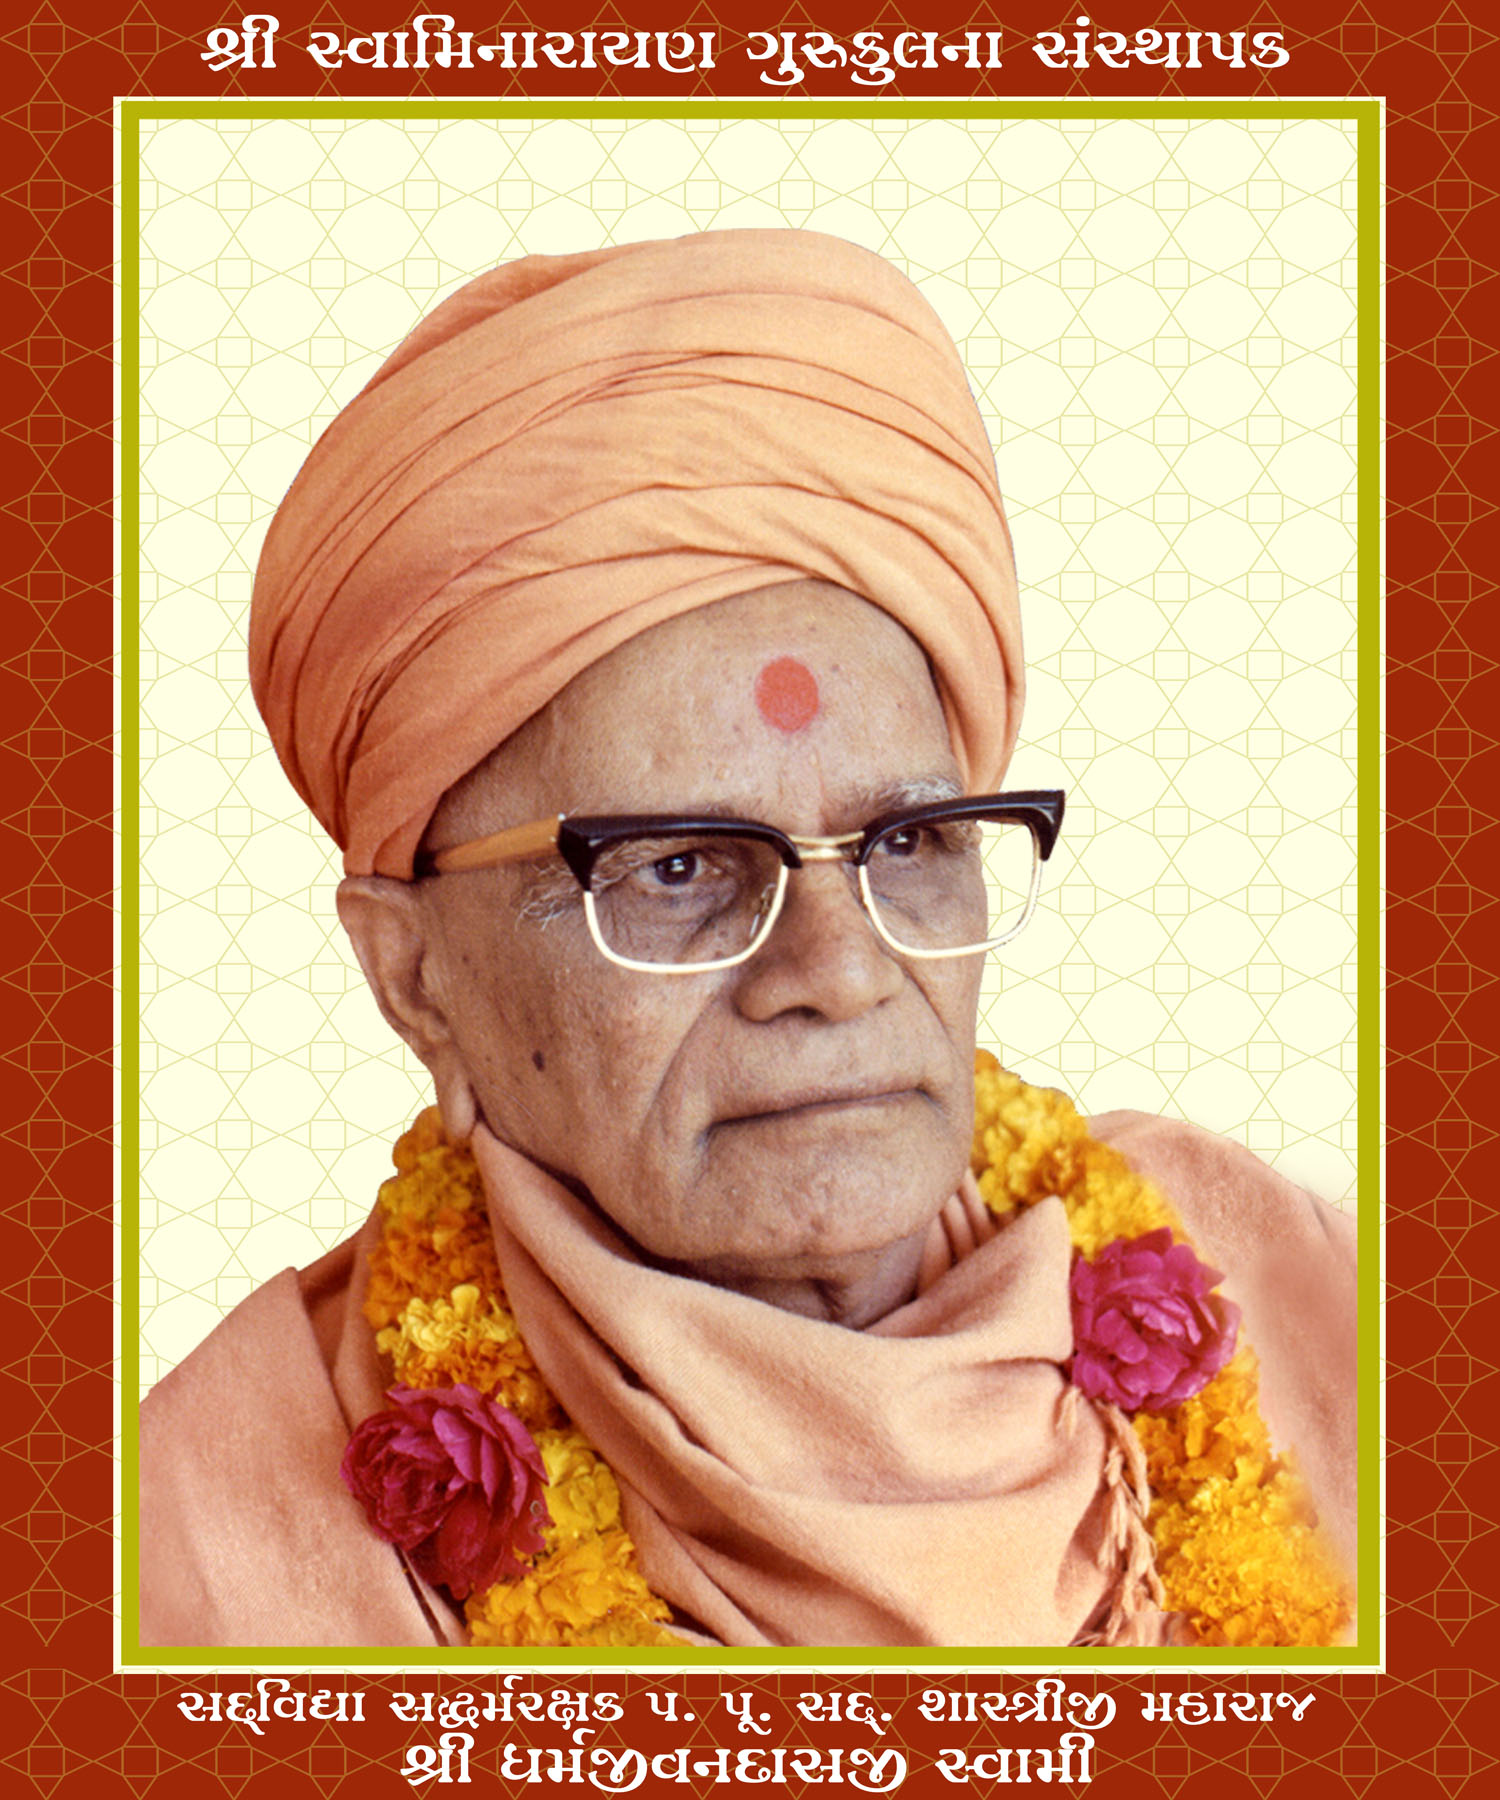 Shree Dharmajivandasji Swami